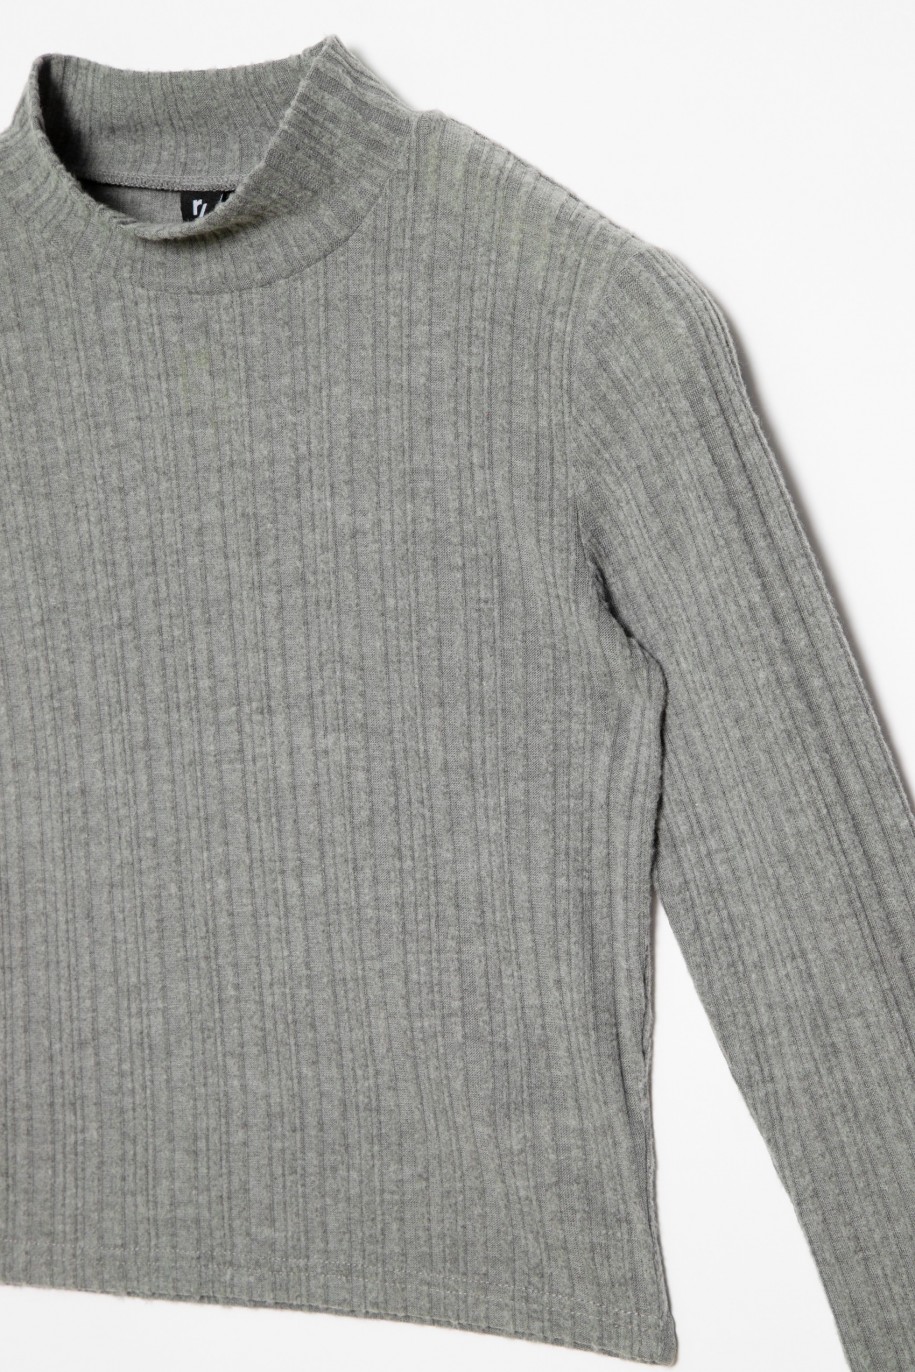 Szary sweter dla dziewczyny z długim rękawem i półgolfem - 31096